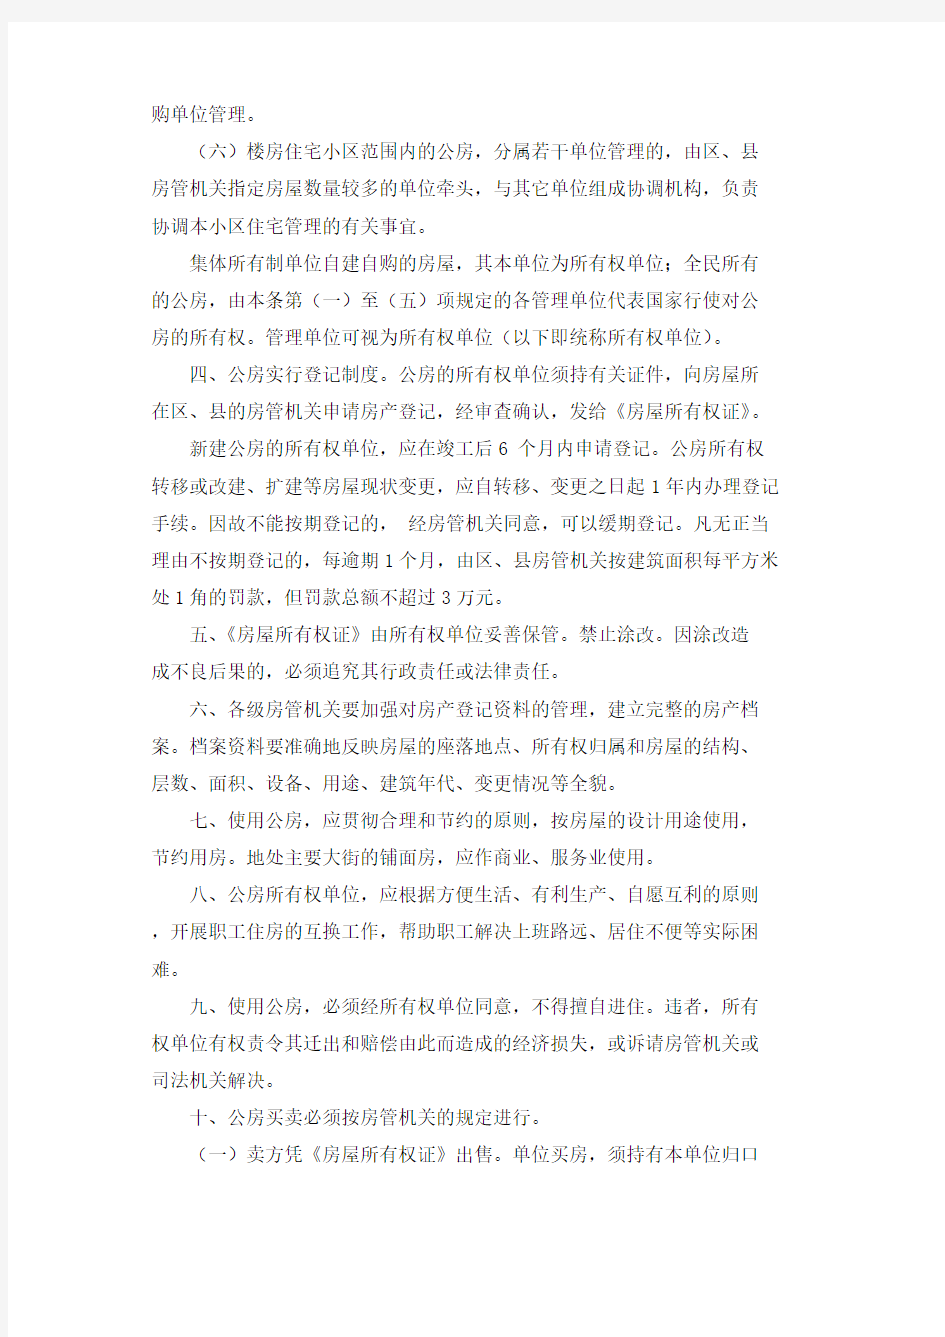 北京市人民政府关于城市公有房屋管理的若干规定